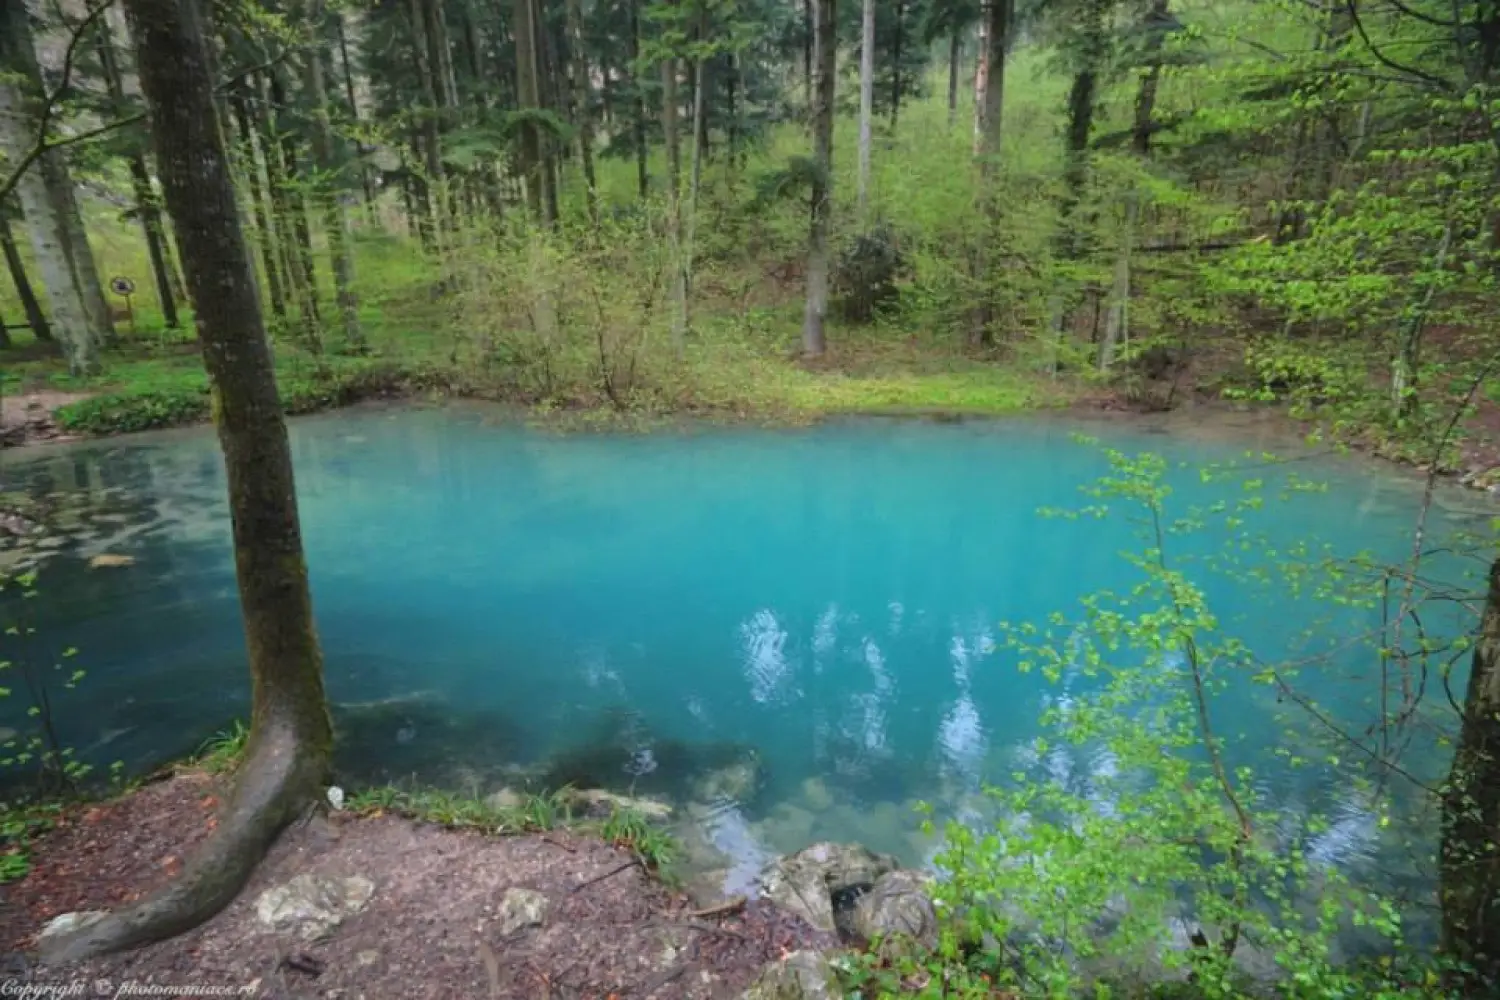 Lacul din Romania care nu ingheata niciodata. O minune la care trebuie sa ajungi pe timp de iarna